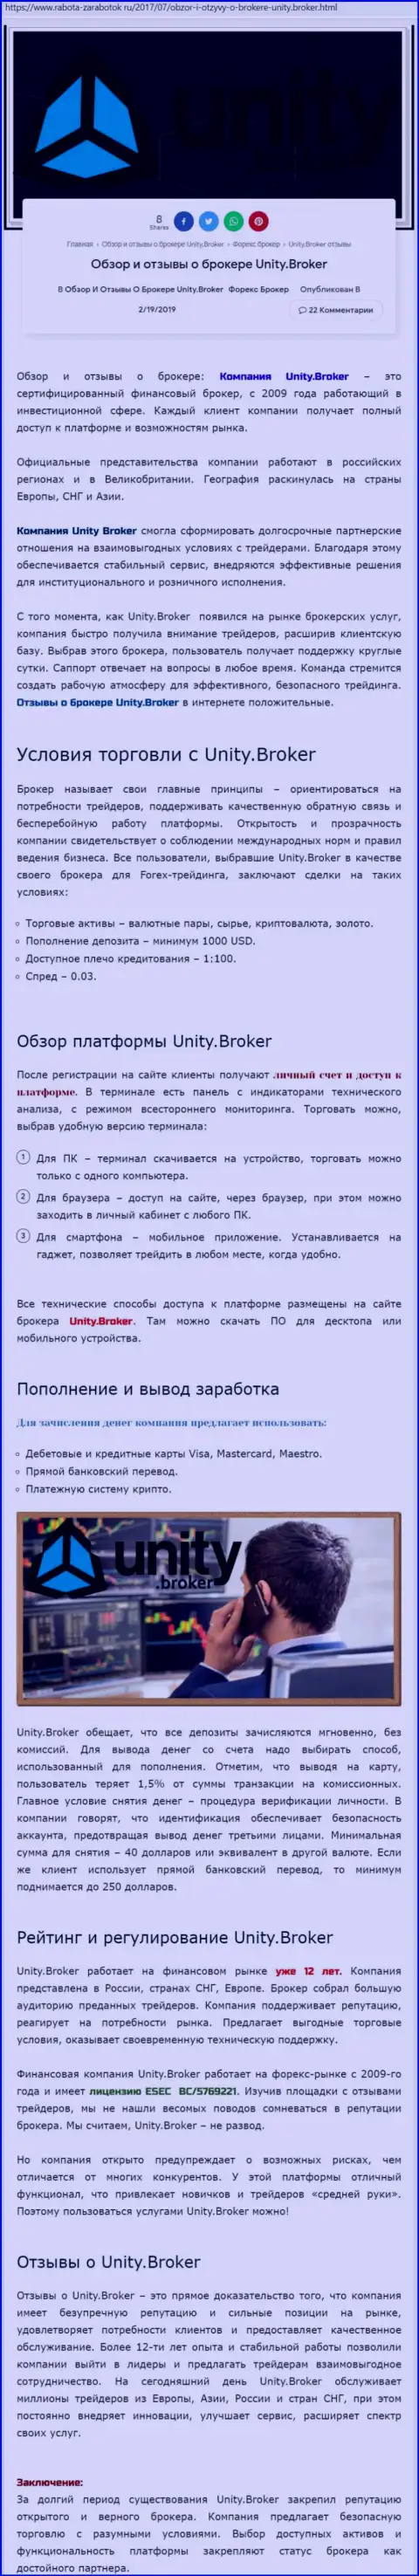 Обзорная информация FOREX дилинговой компании Unity Broker на информационном ресурсе rabota-zarabotok ru